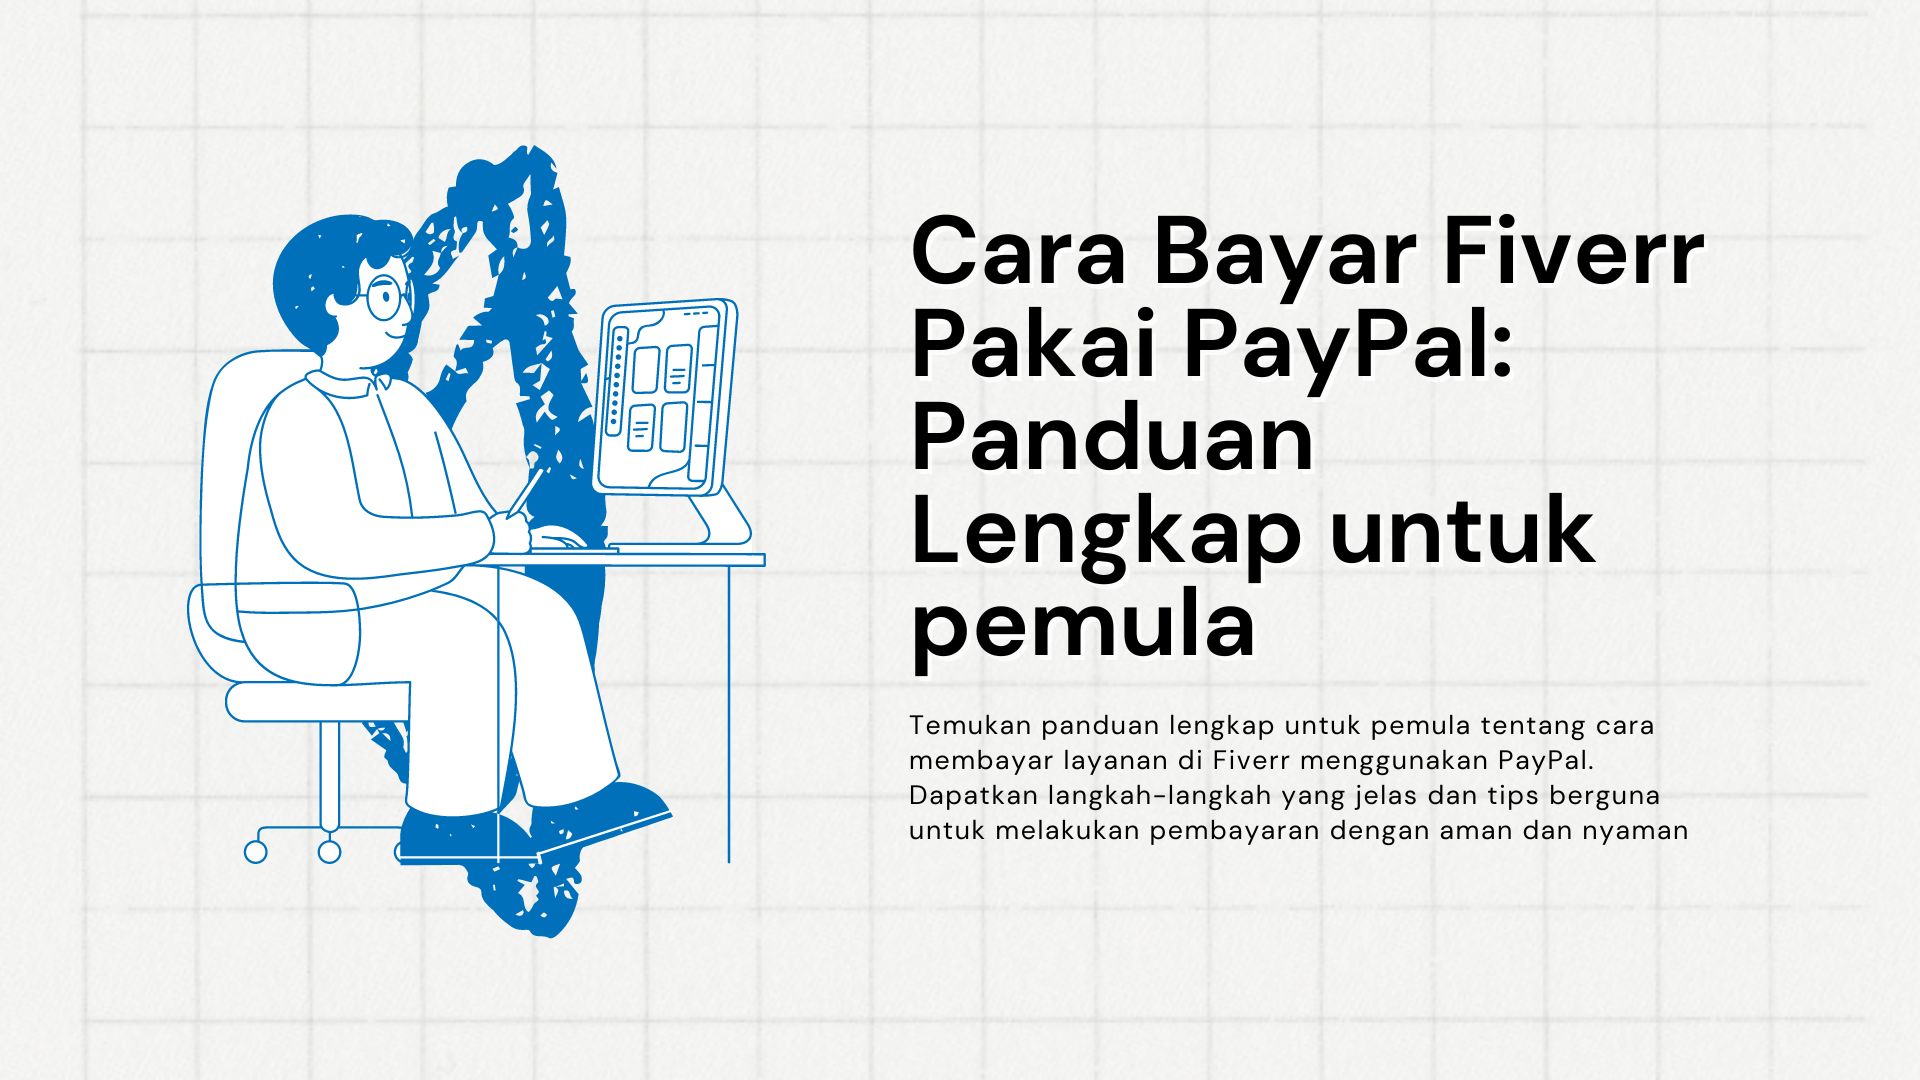 Cara Bayar Fiverr Pakai PayPal: Panduan Lengkap untuk pemula